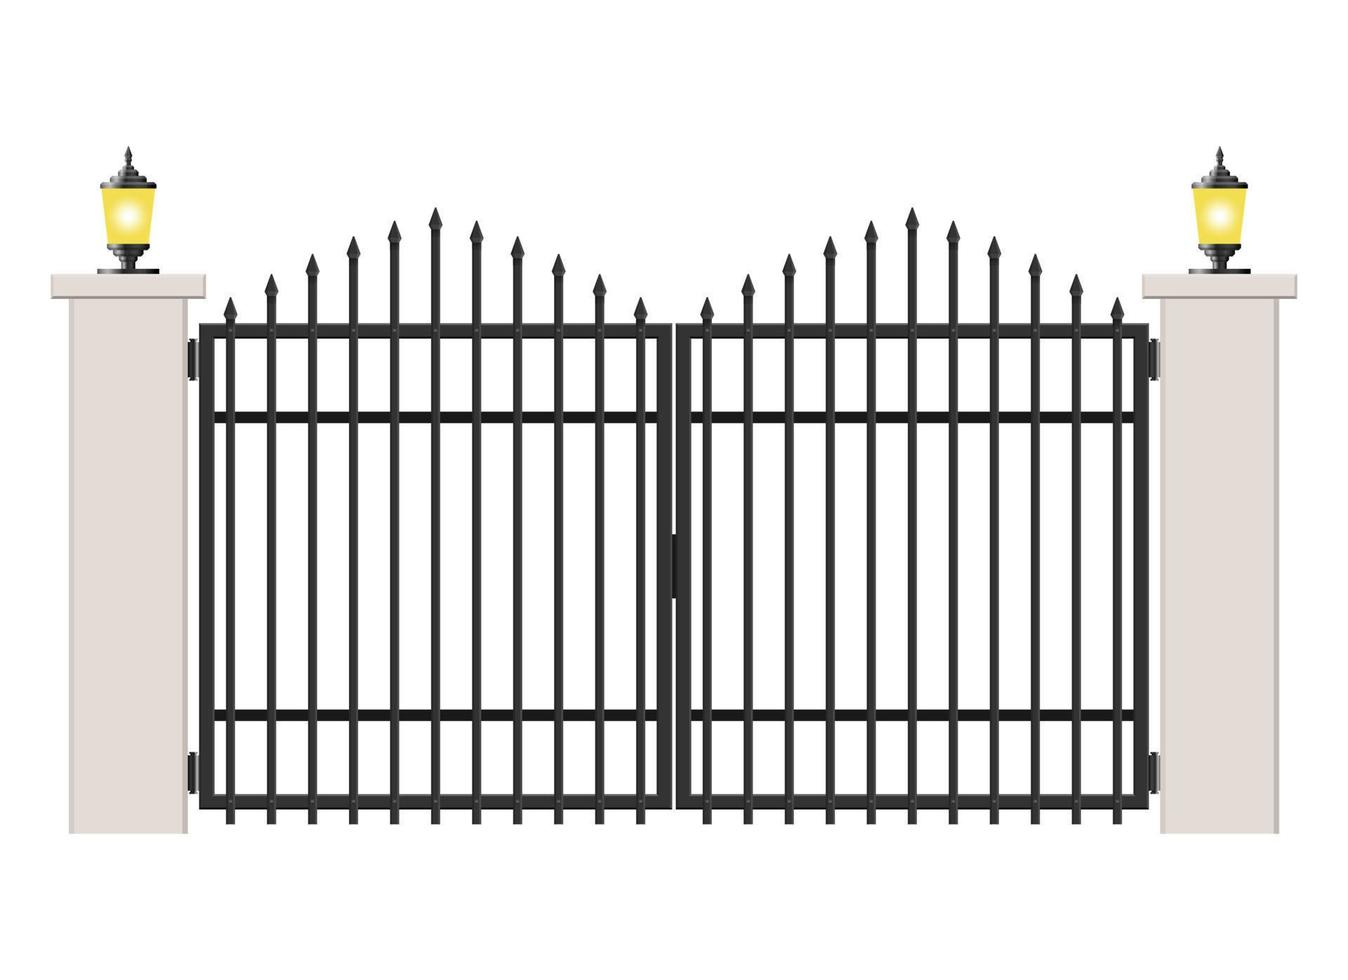 Puerta de hormigón y acero aislado sobre fondo blanco. vector